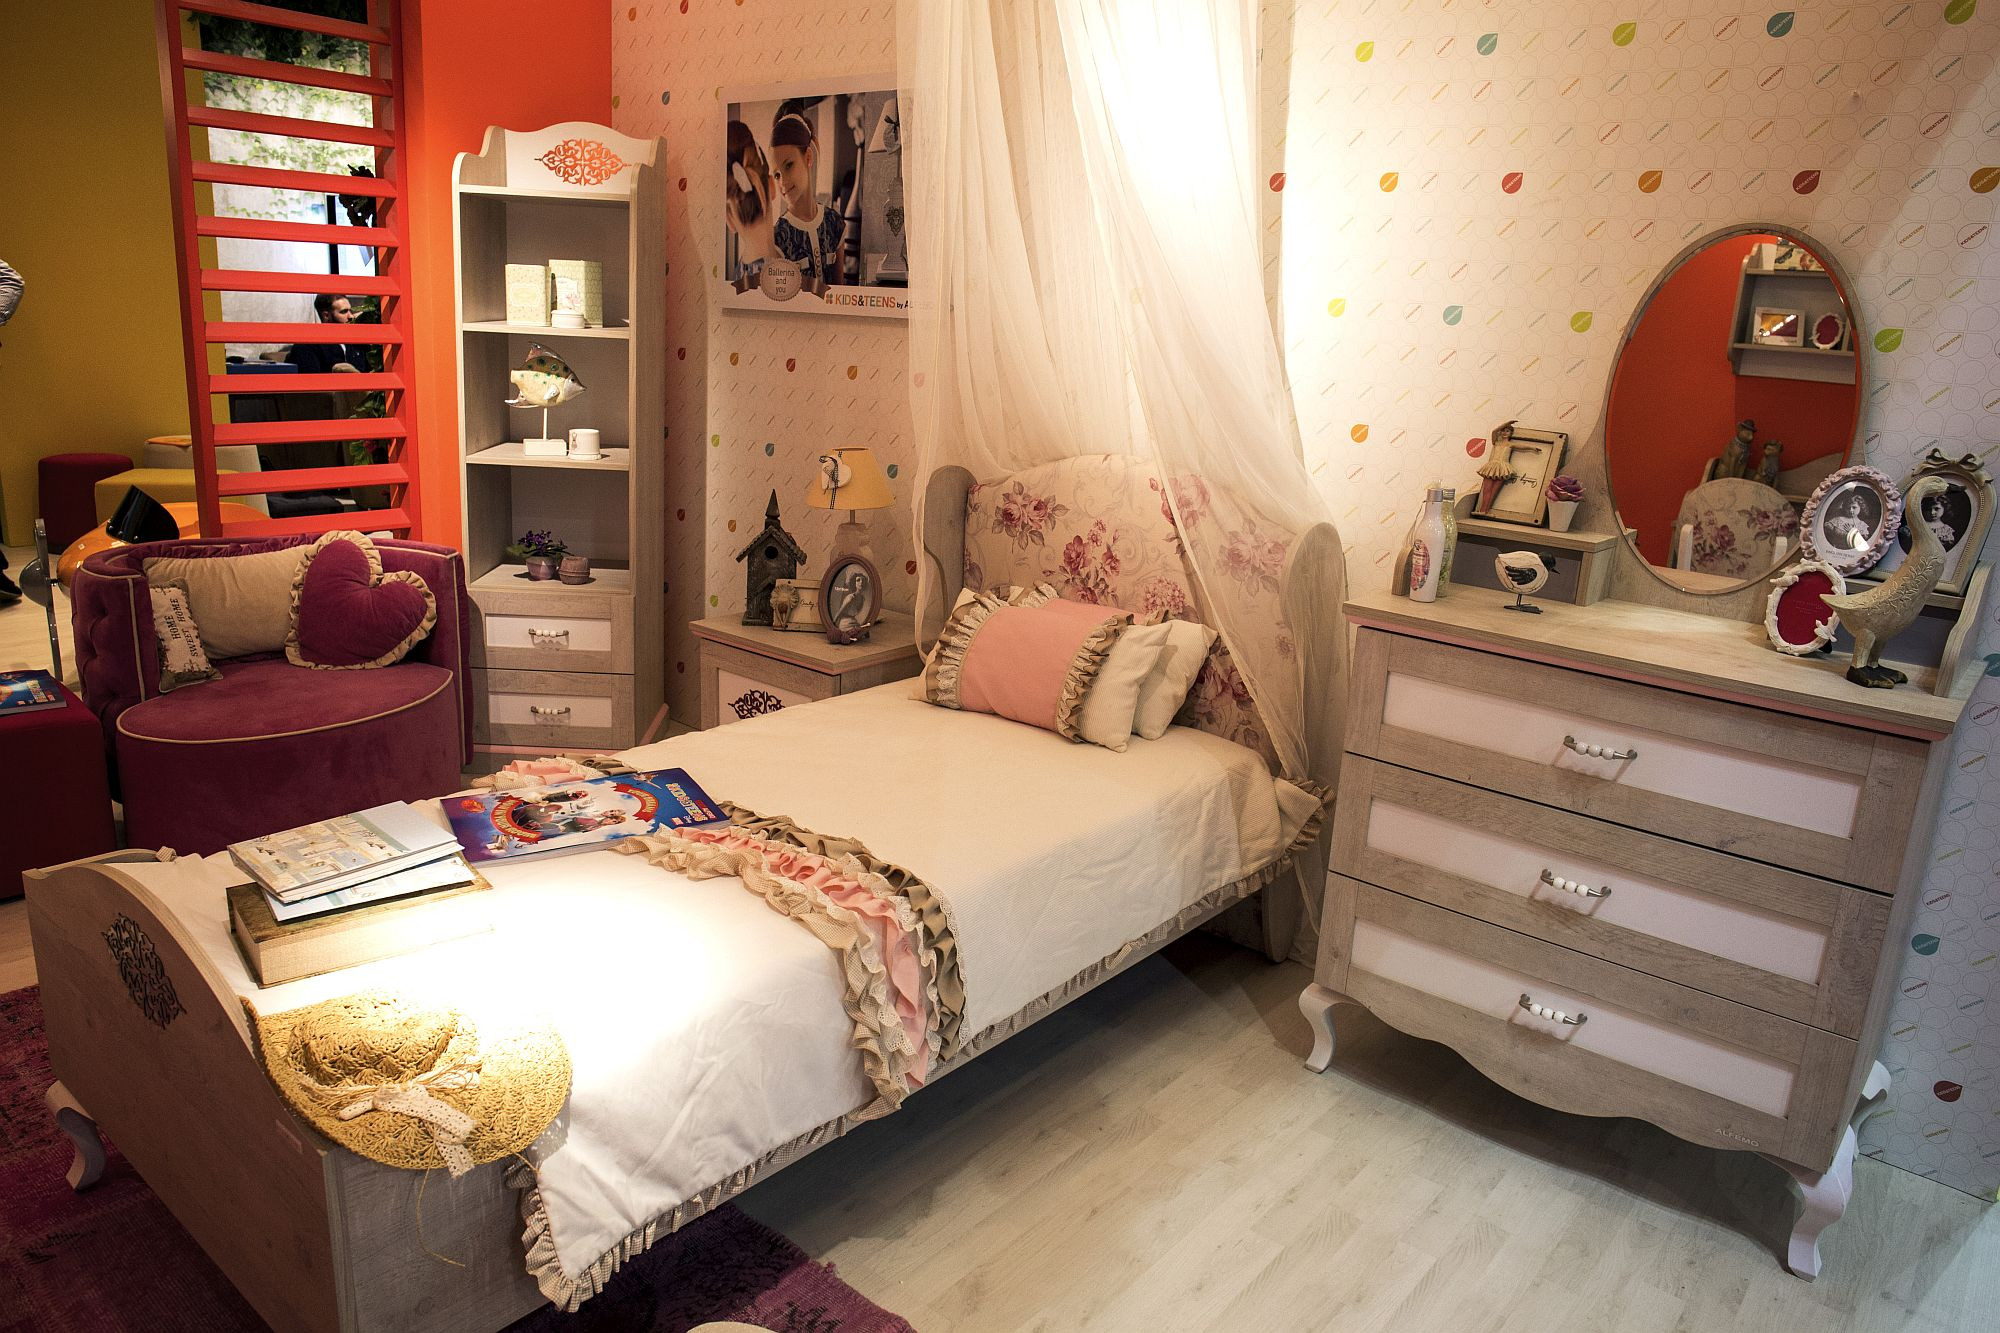 Corner Shelf For Kids Room
 15 Ways to Maximize Corner Space in Kids’ Bedrooms